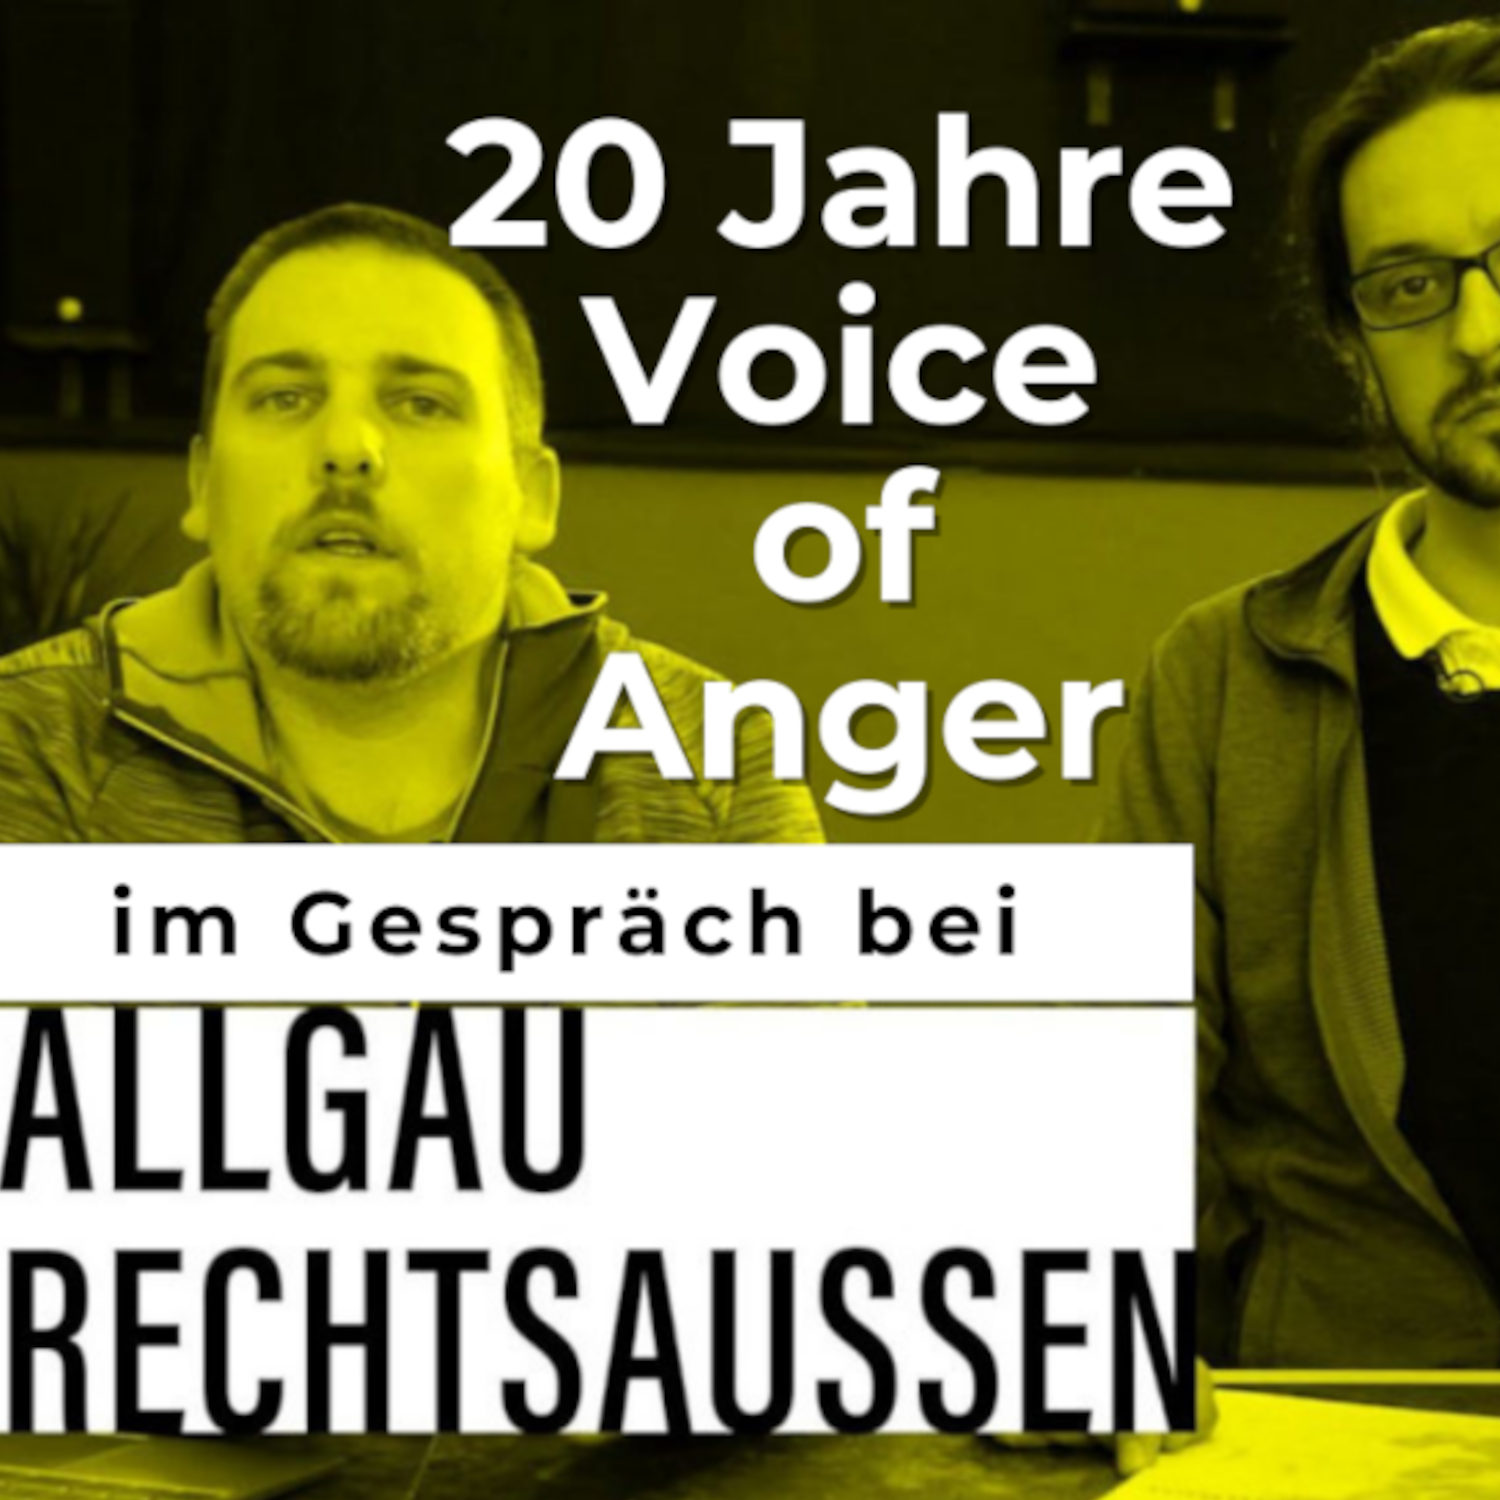 20 Jahre Voice of Anger im Gespräch bei Allgäu rechtsaußen